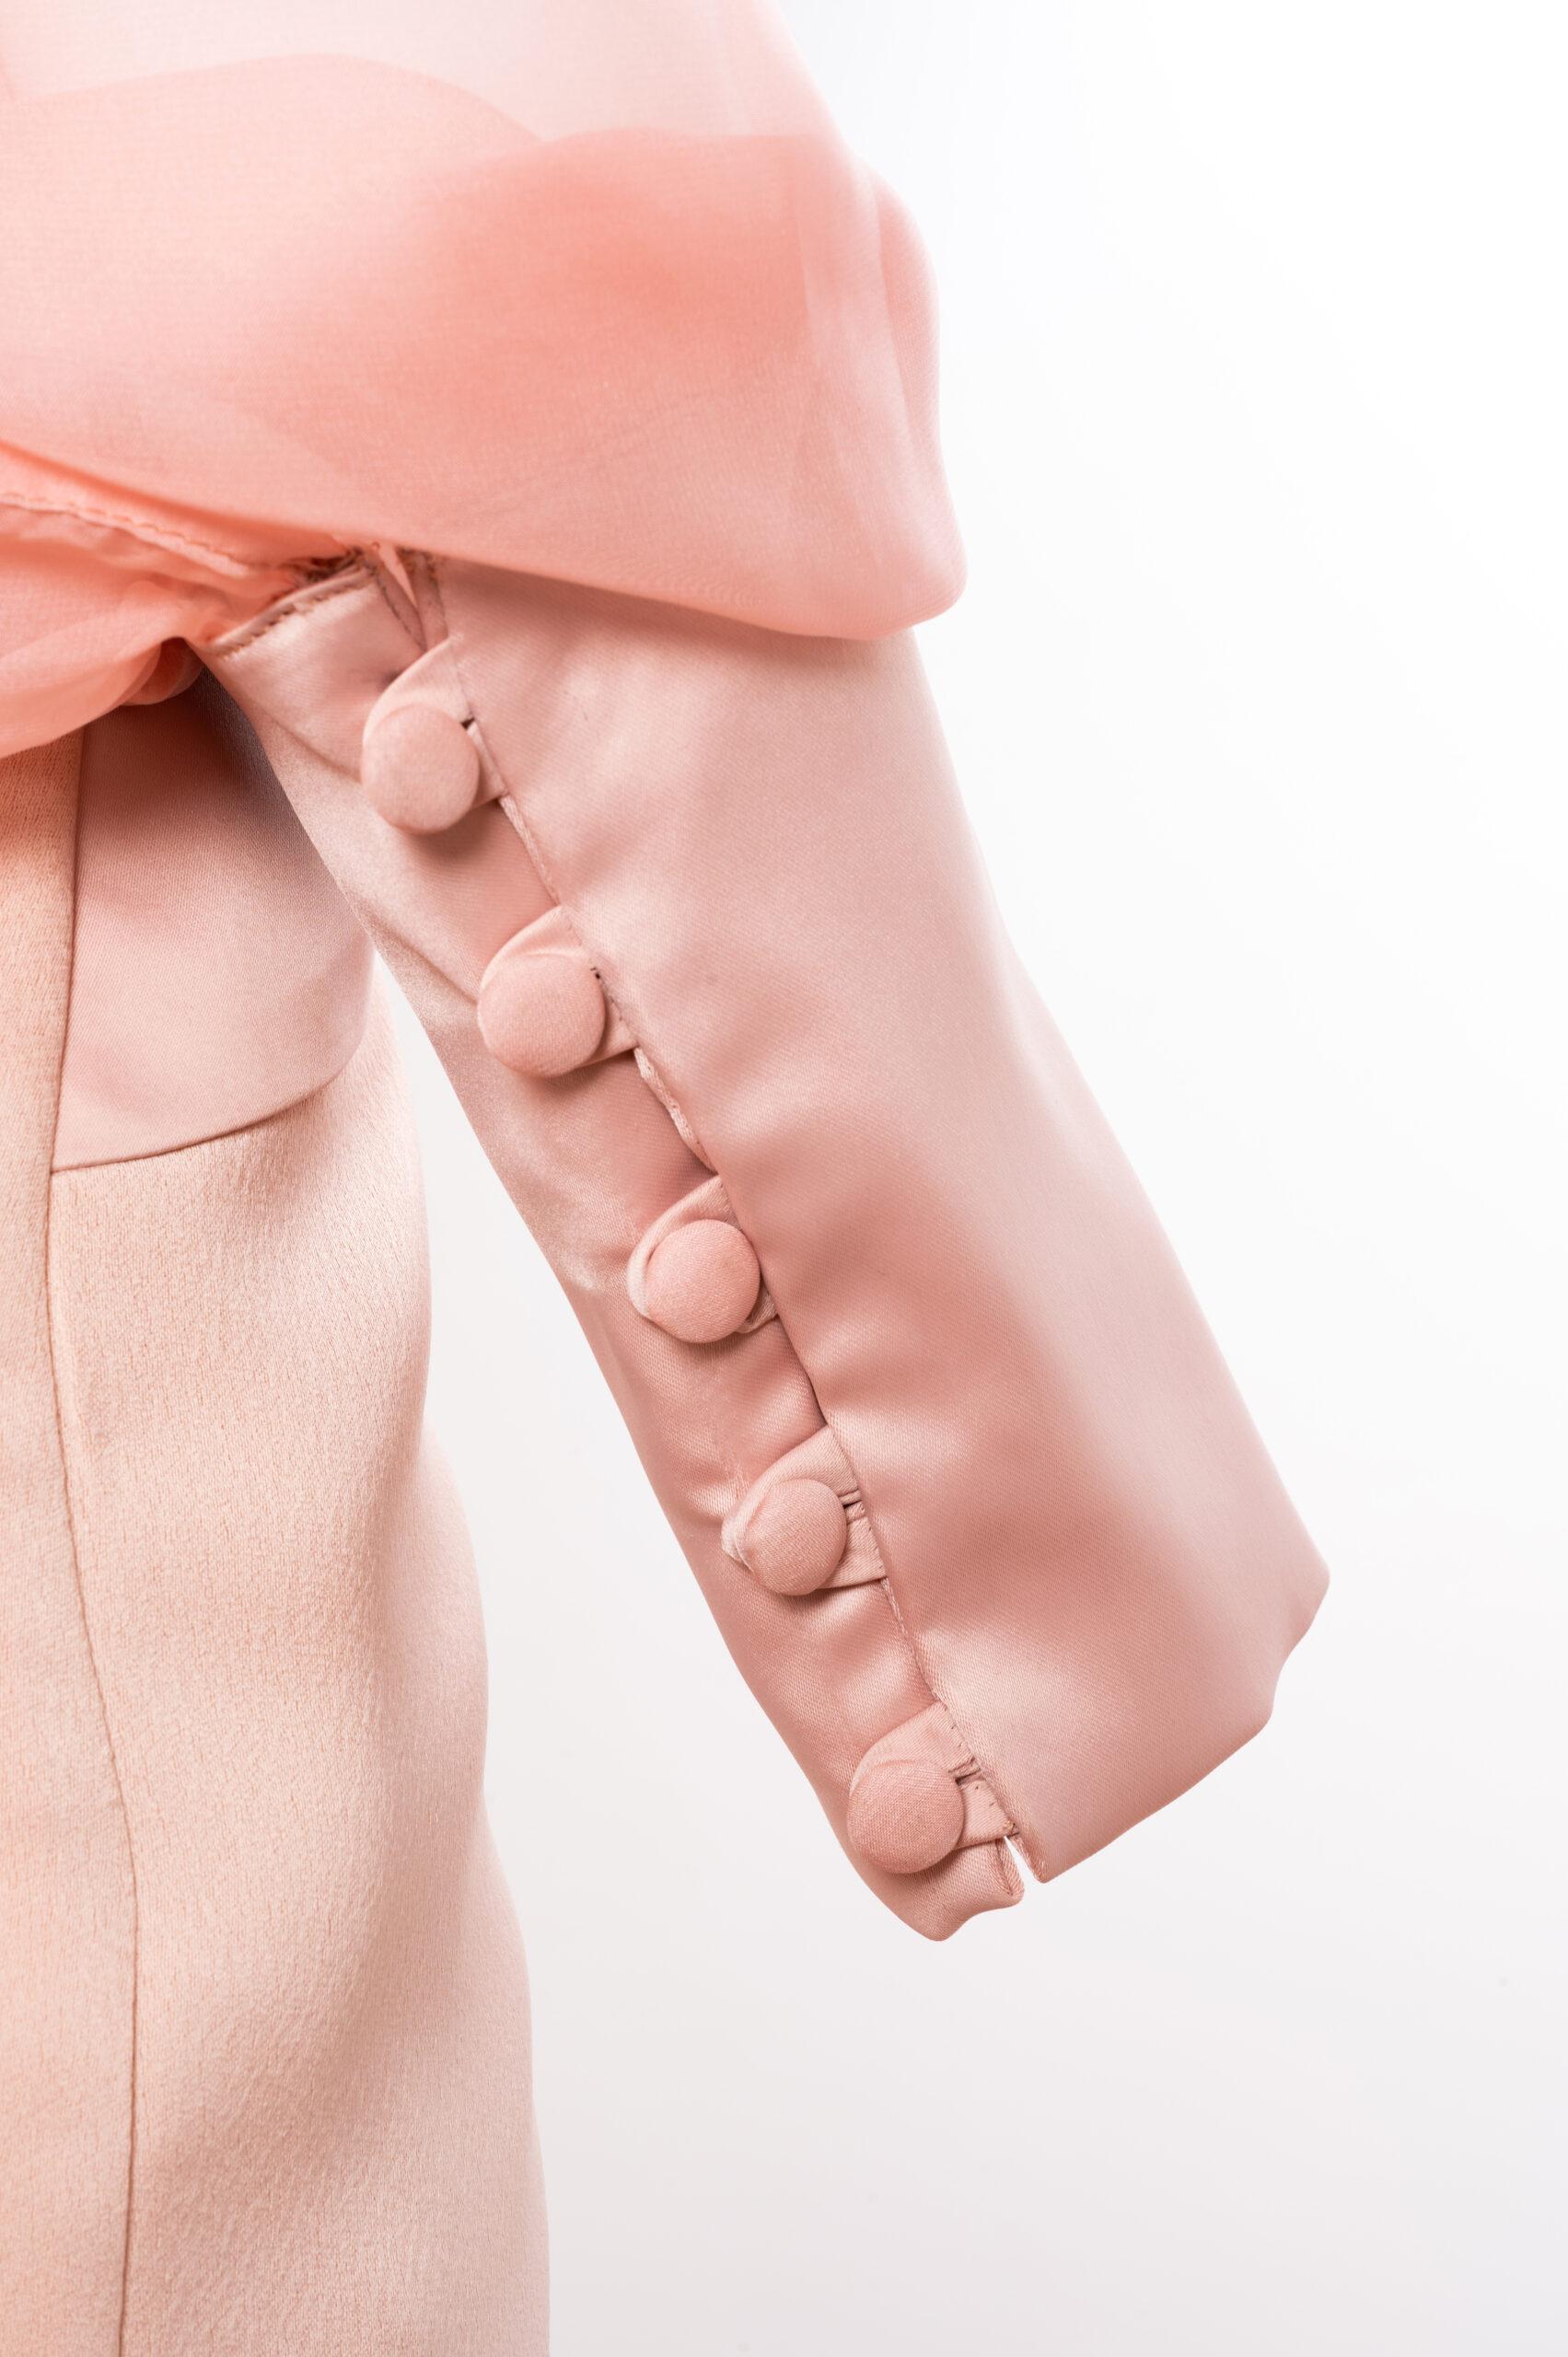 pink silk long sleeve dress